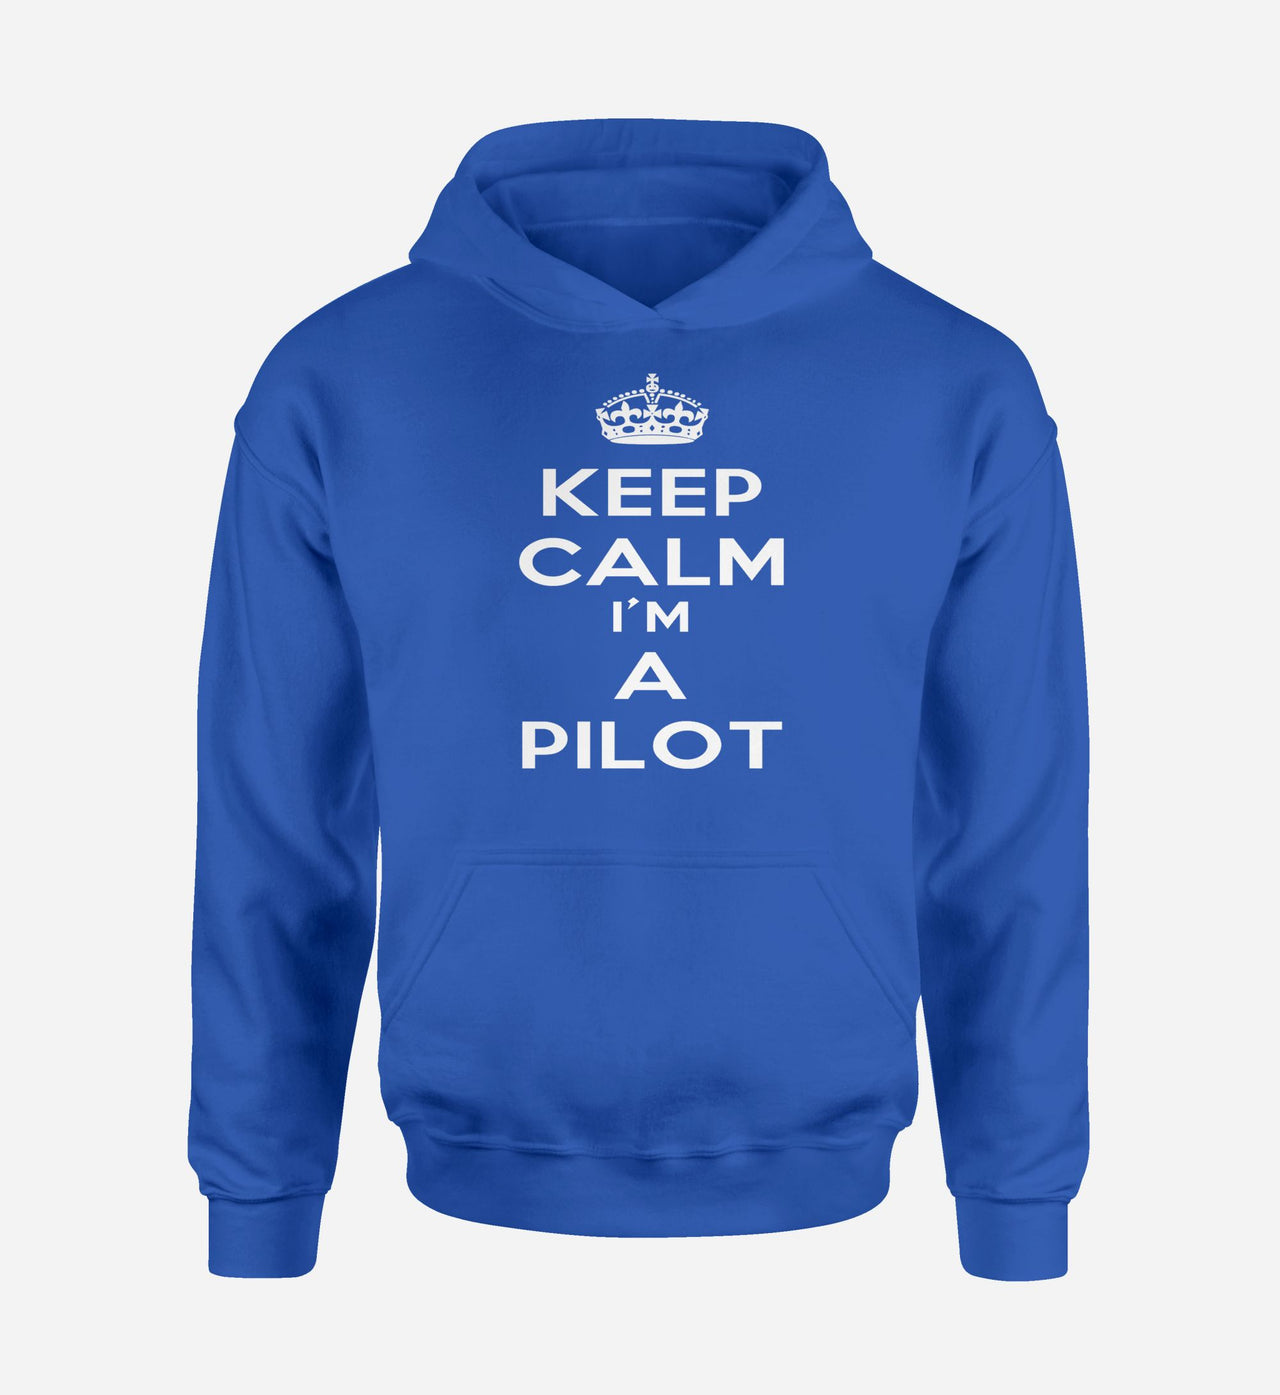 Keep Calm I'm a Pilot Designed Hoodies